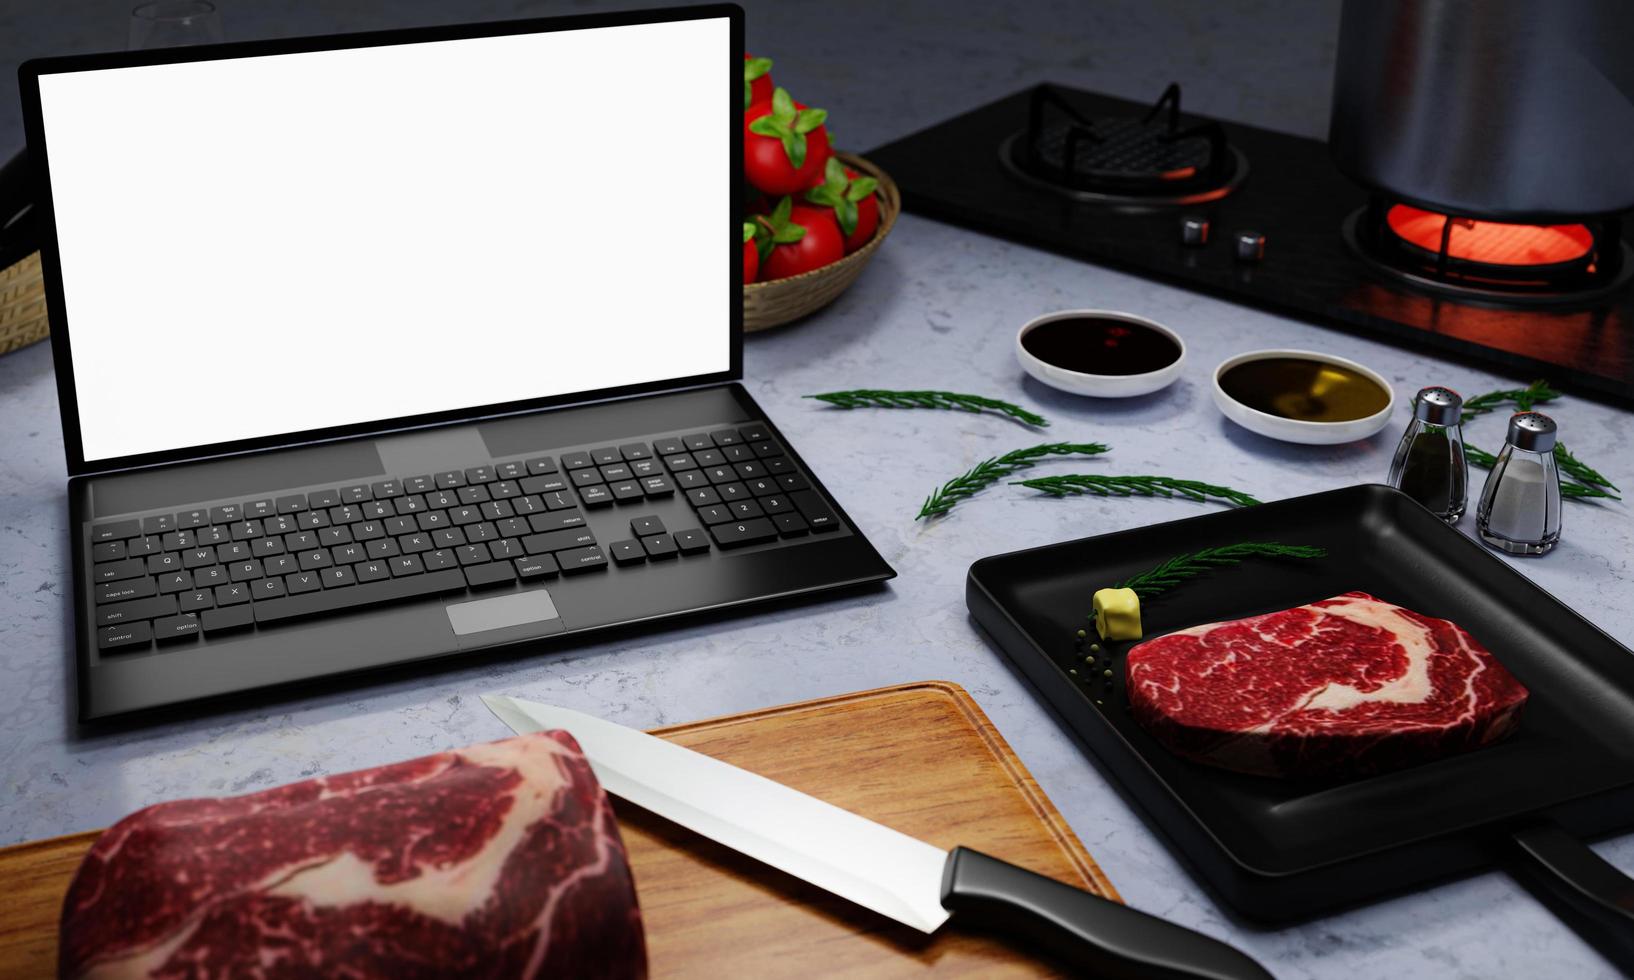 online leren koken. hoe u voedsel en recepten van internet kookt. vlees voor het koken van biefstuk op de pan. er is boter en peper. computer of laptop om online in de keuken te studeren. 3D-rendering foto